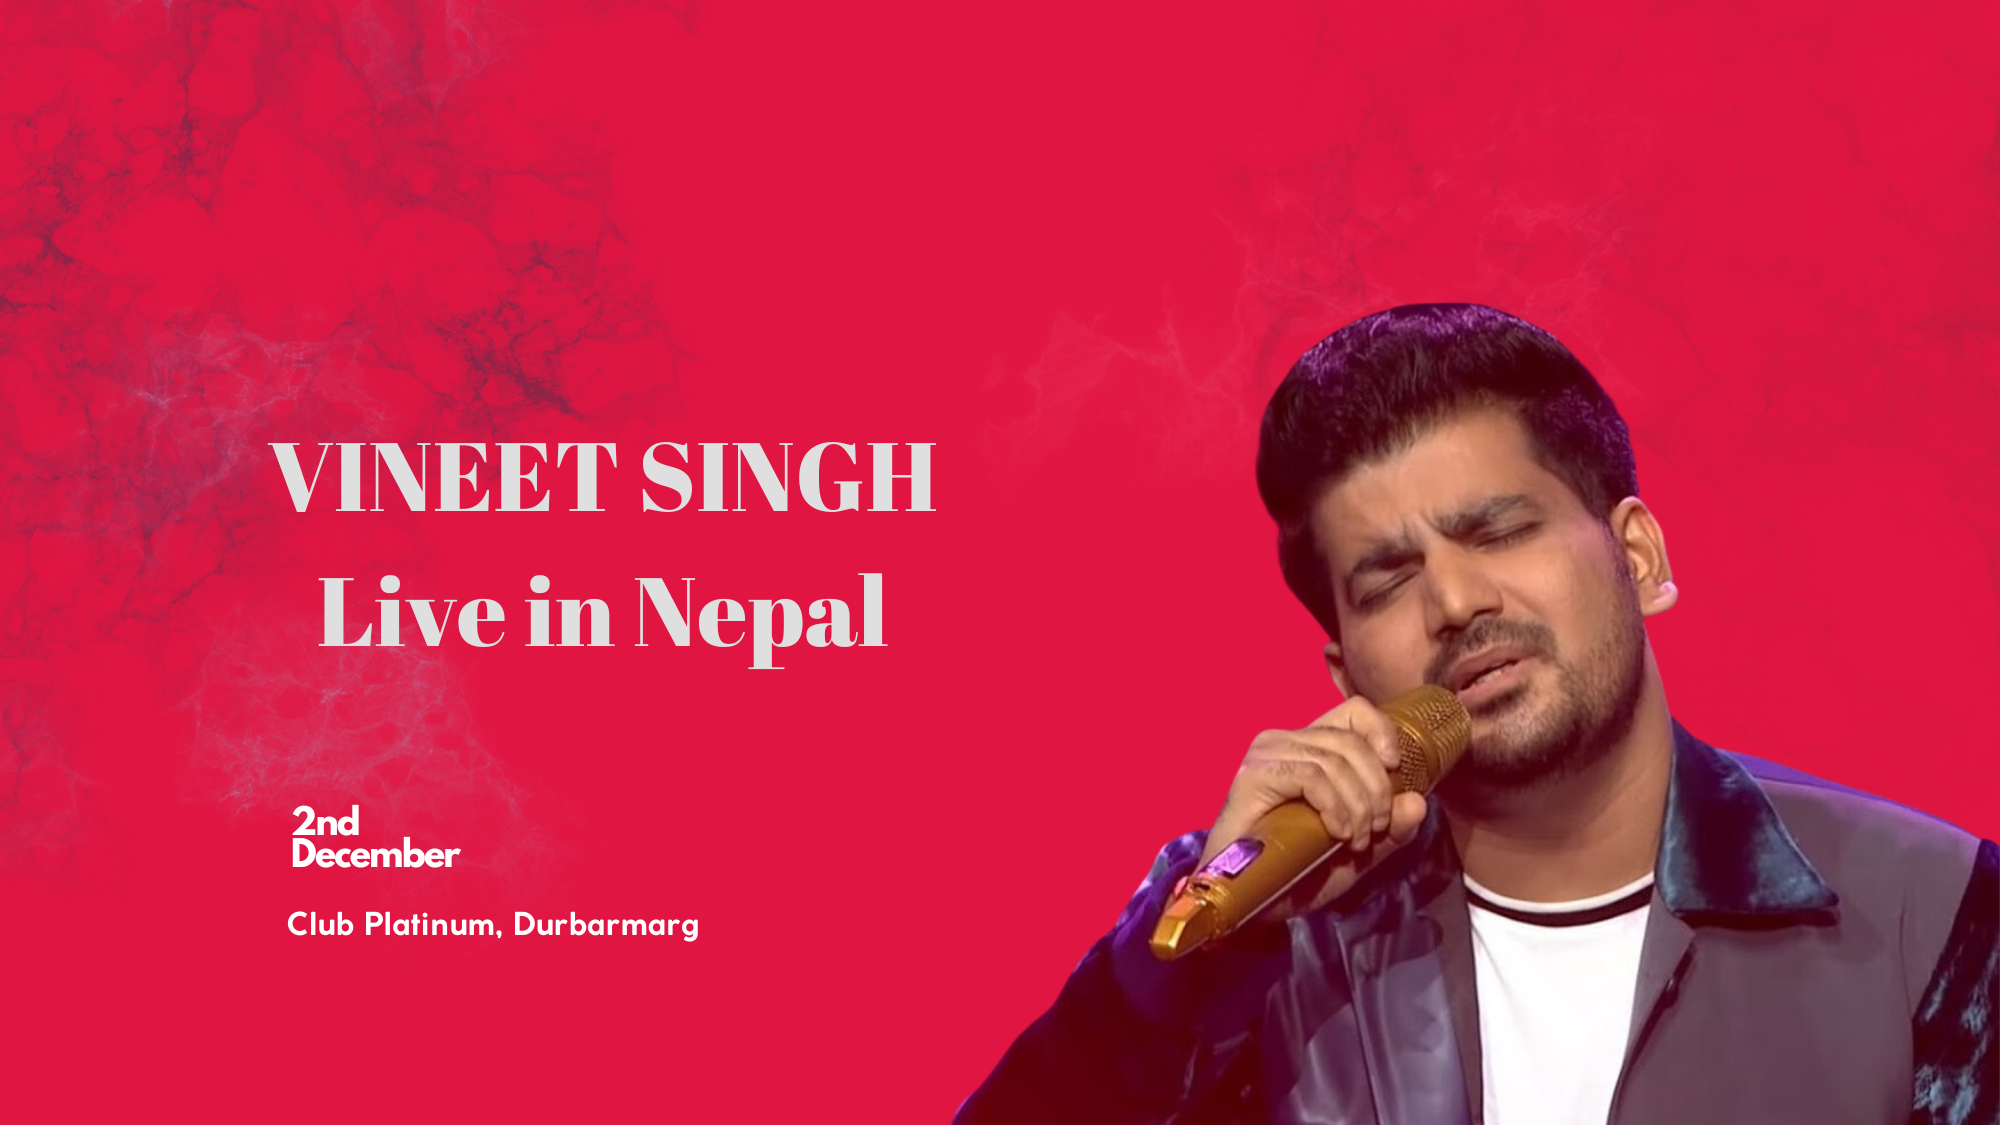 VINEET SINGH performing live in Nepal